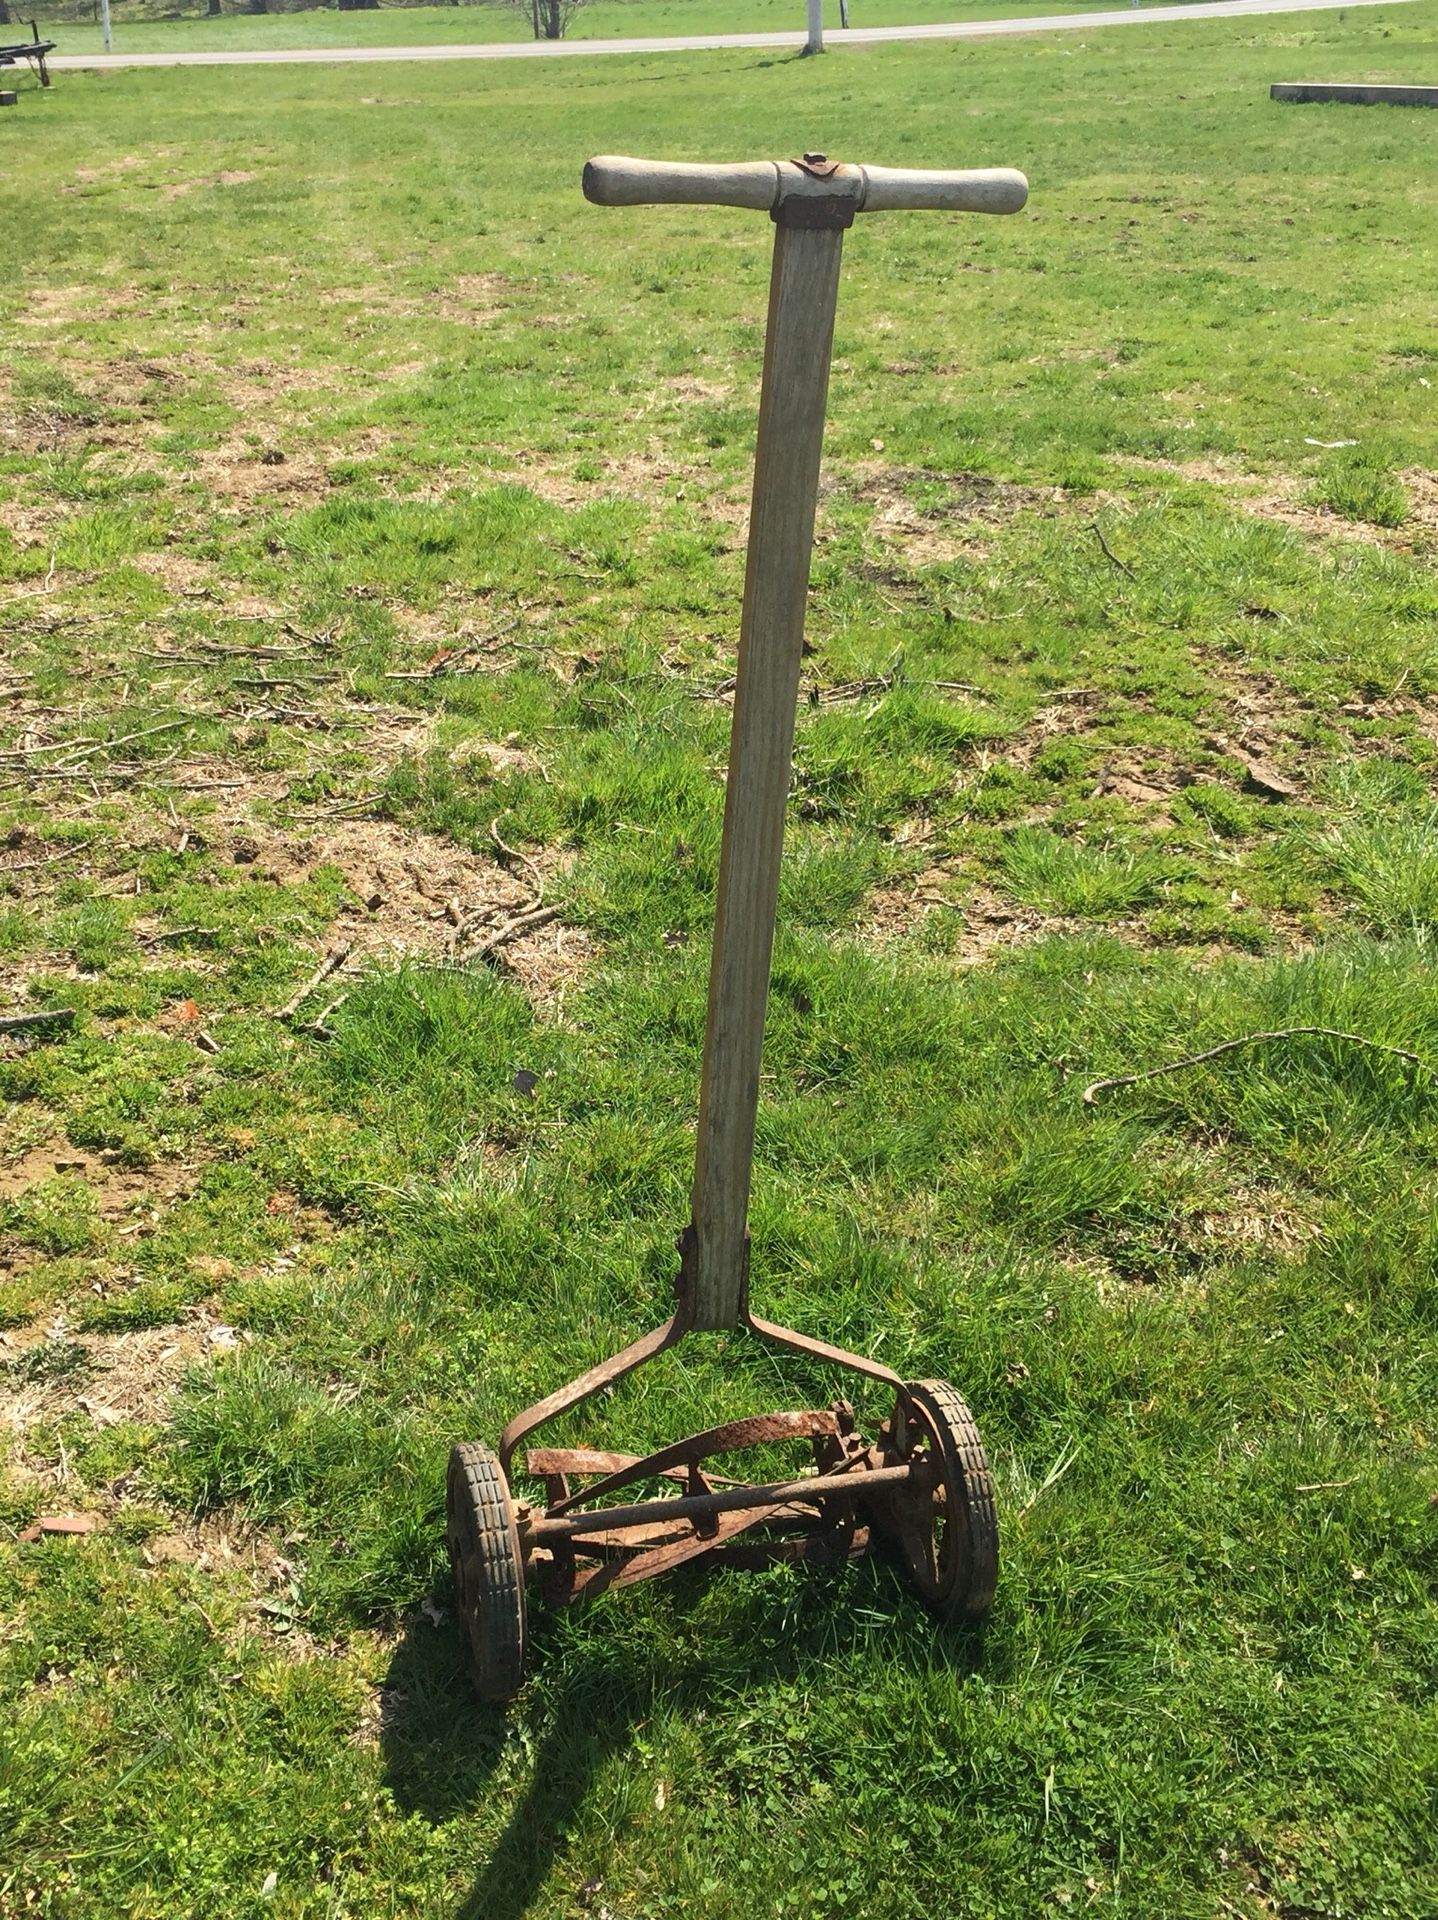 Antique Wood Handled Reel Mower